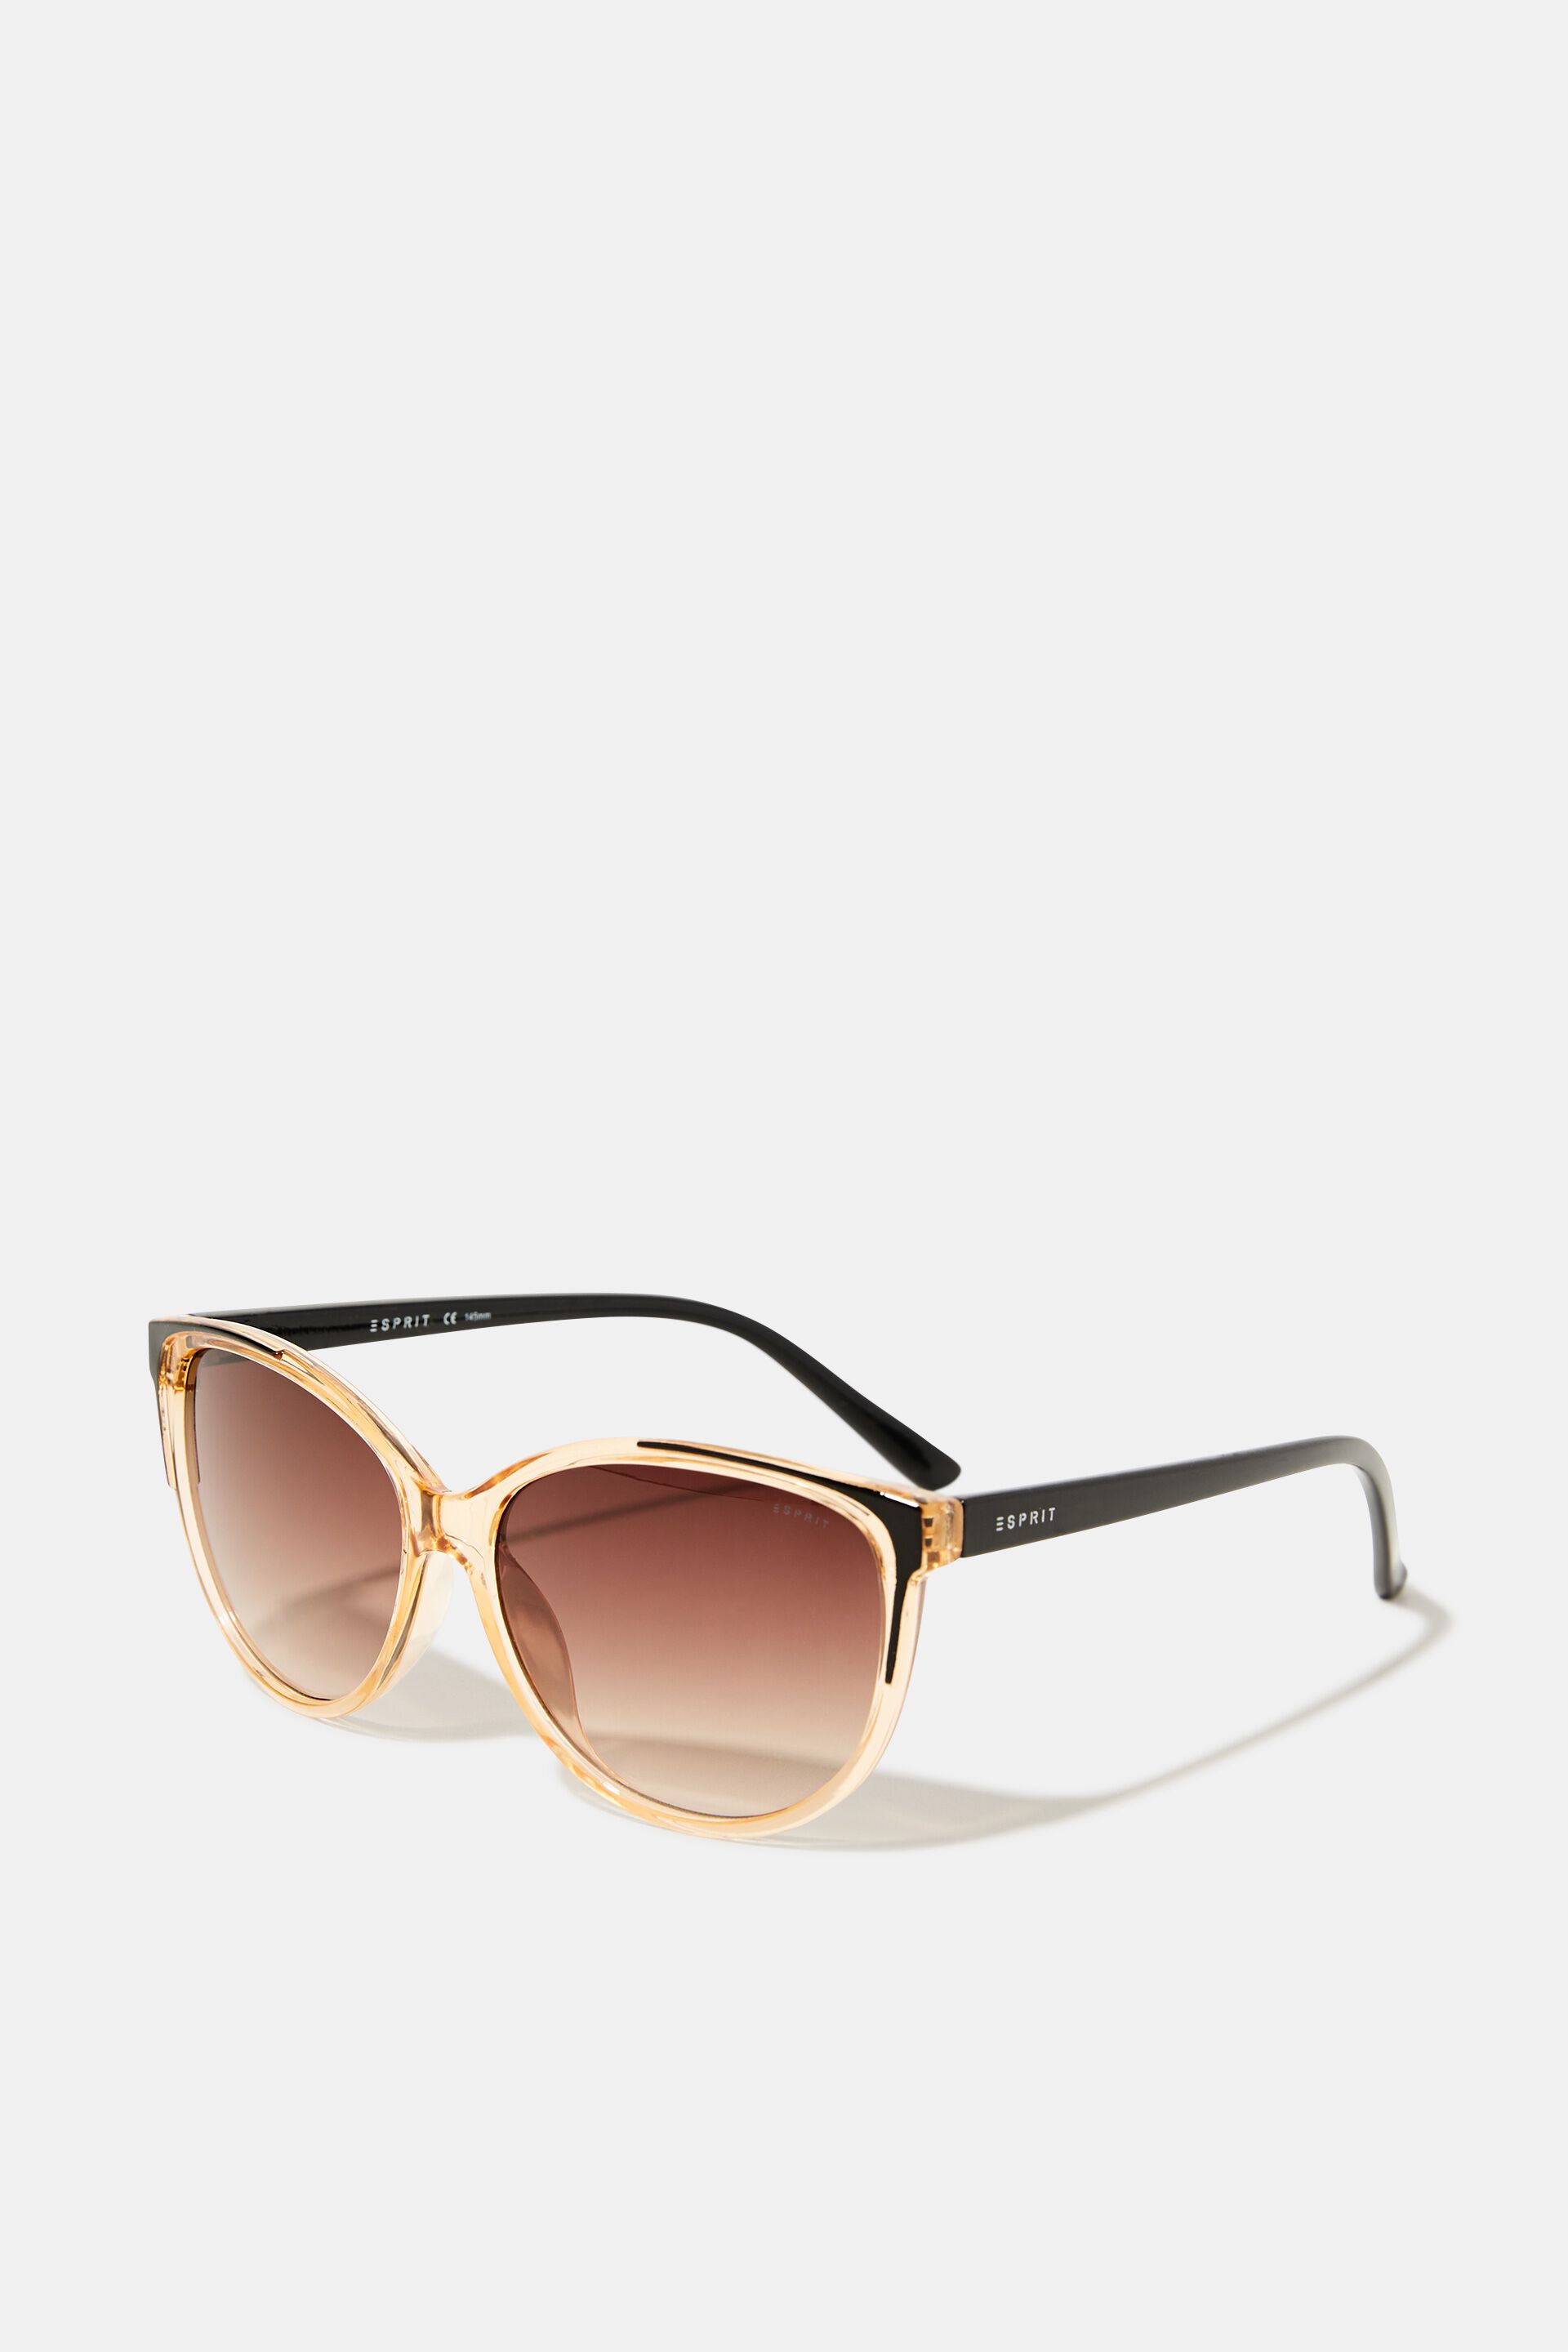 Esprit with Sunglasses frame transparent